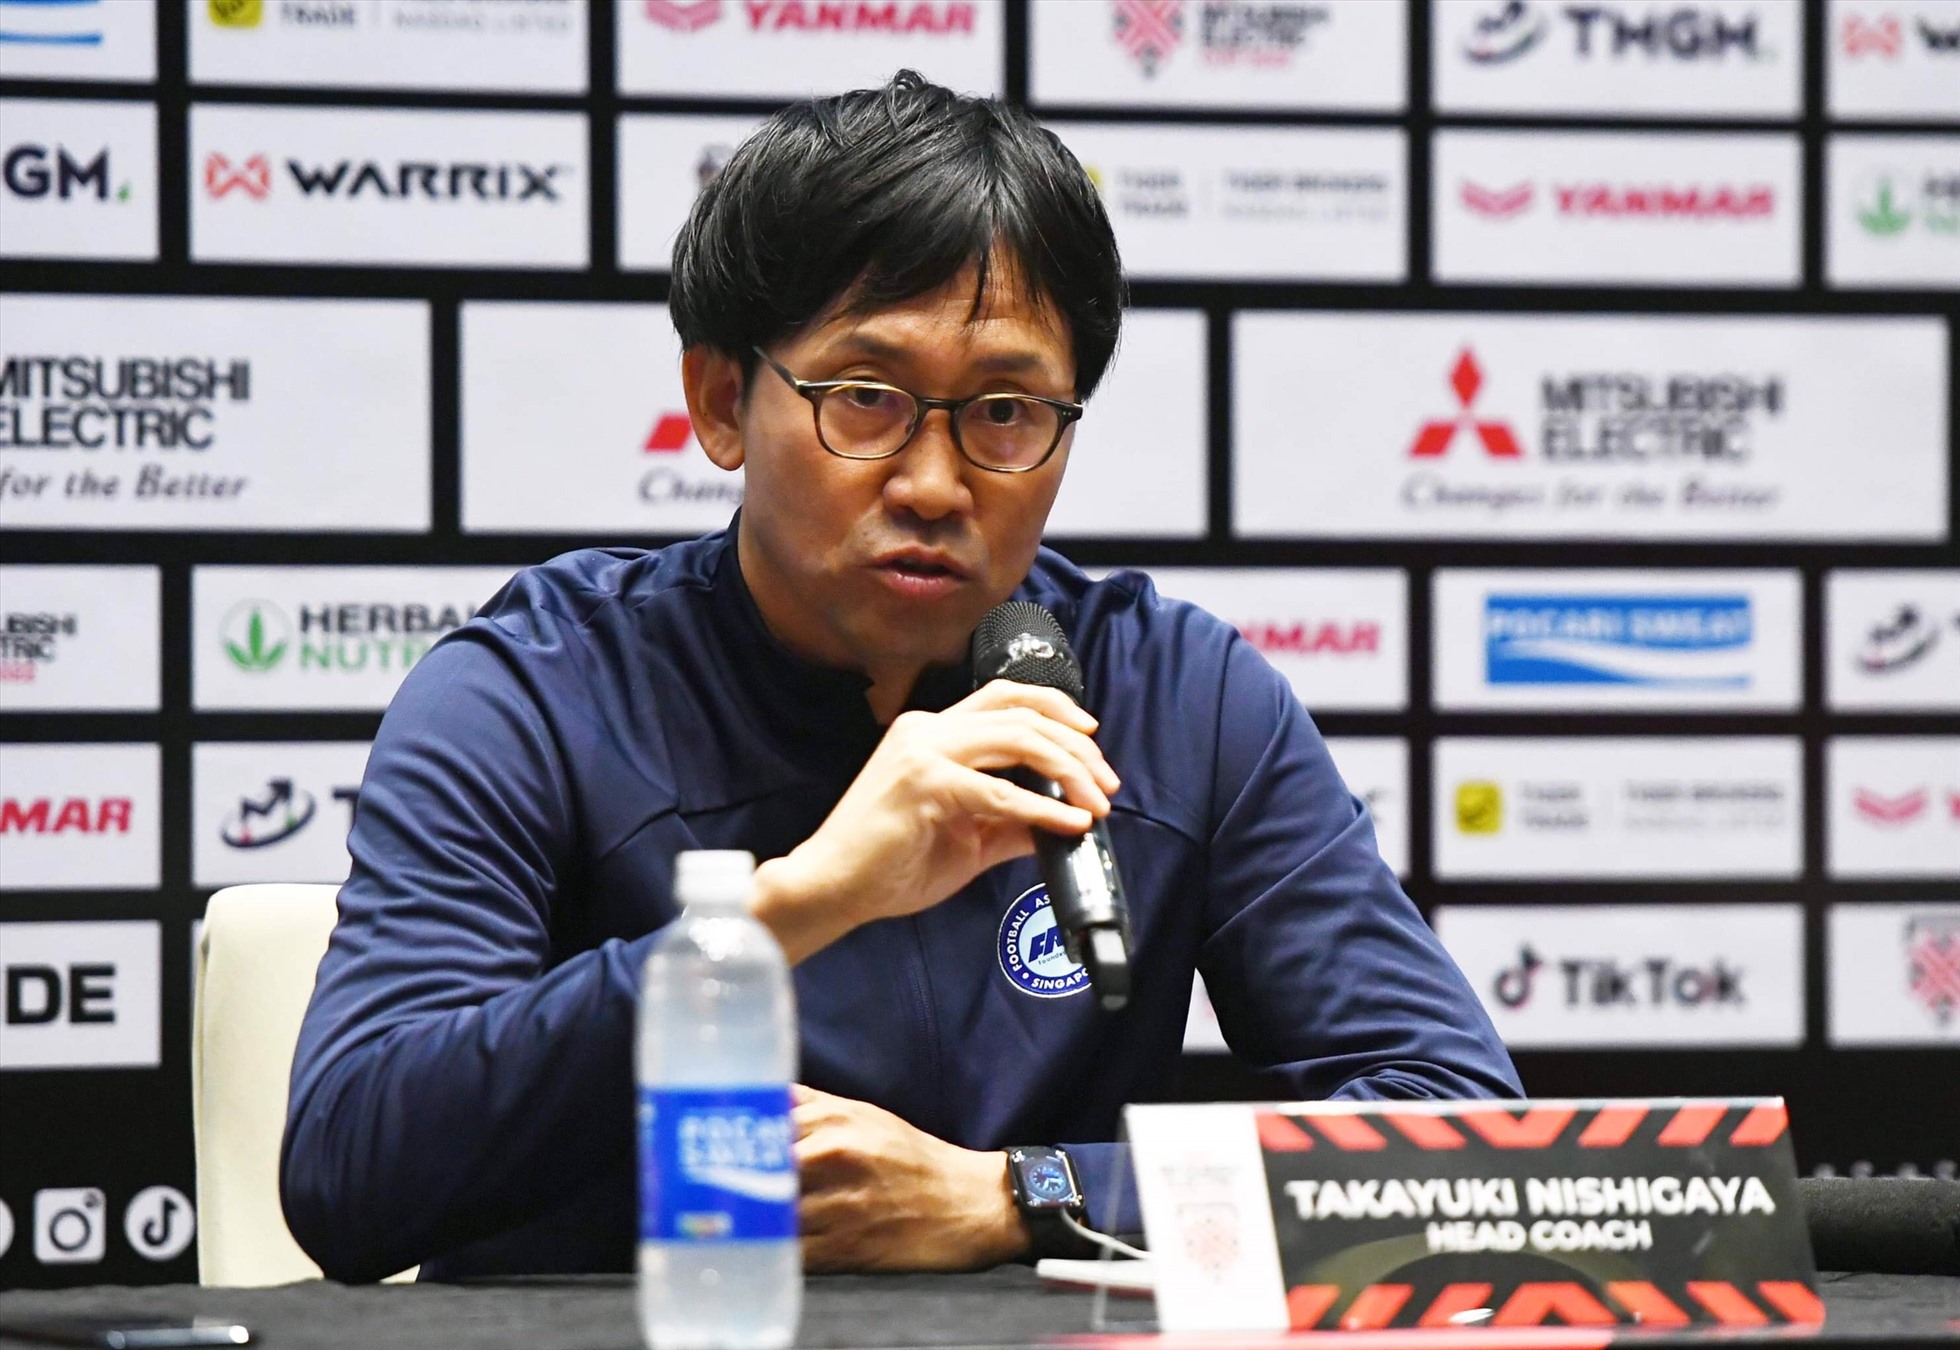 Huấn luyện viên Takayuki Nishigaya thừa nhận trận đấu với tuyển Việt Nam rất khó khăn. Ảnh: Xuân Trang